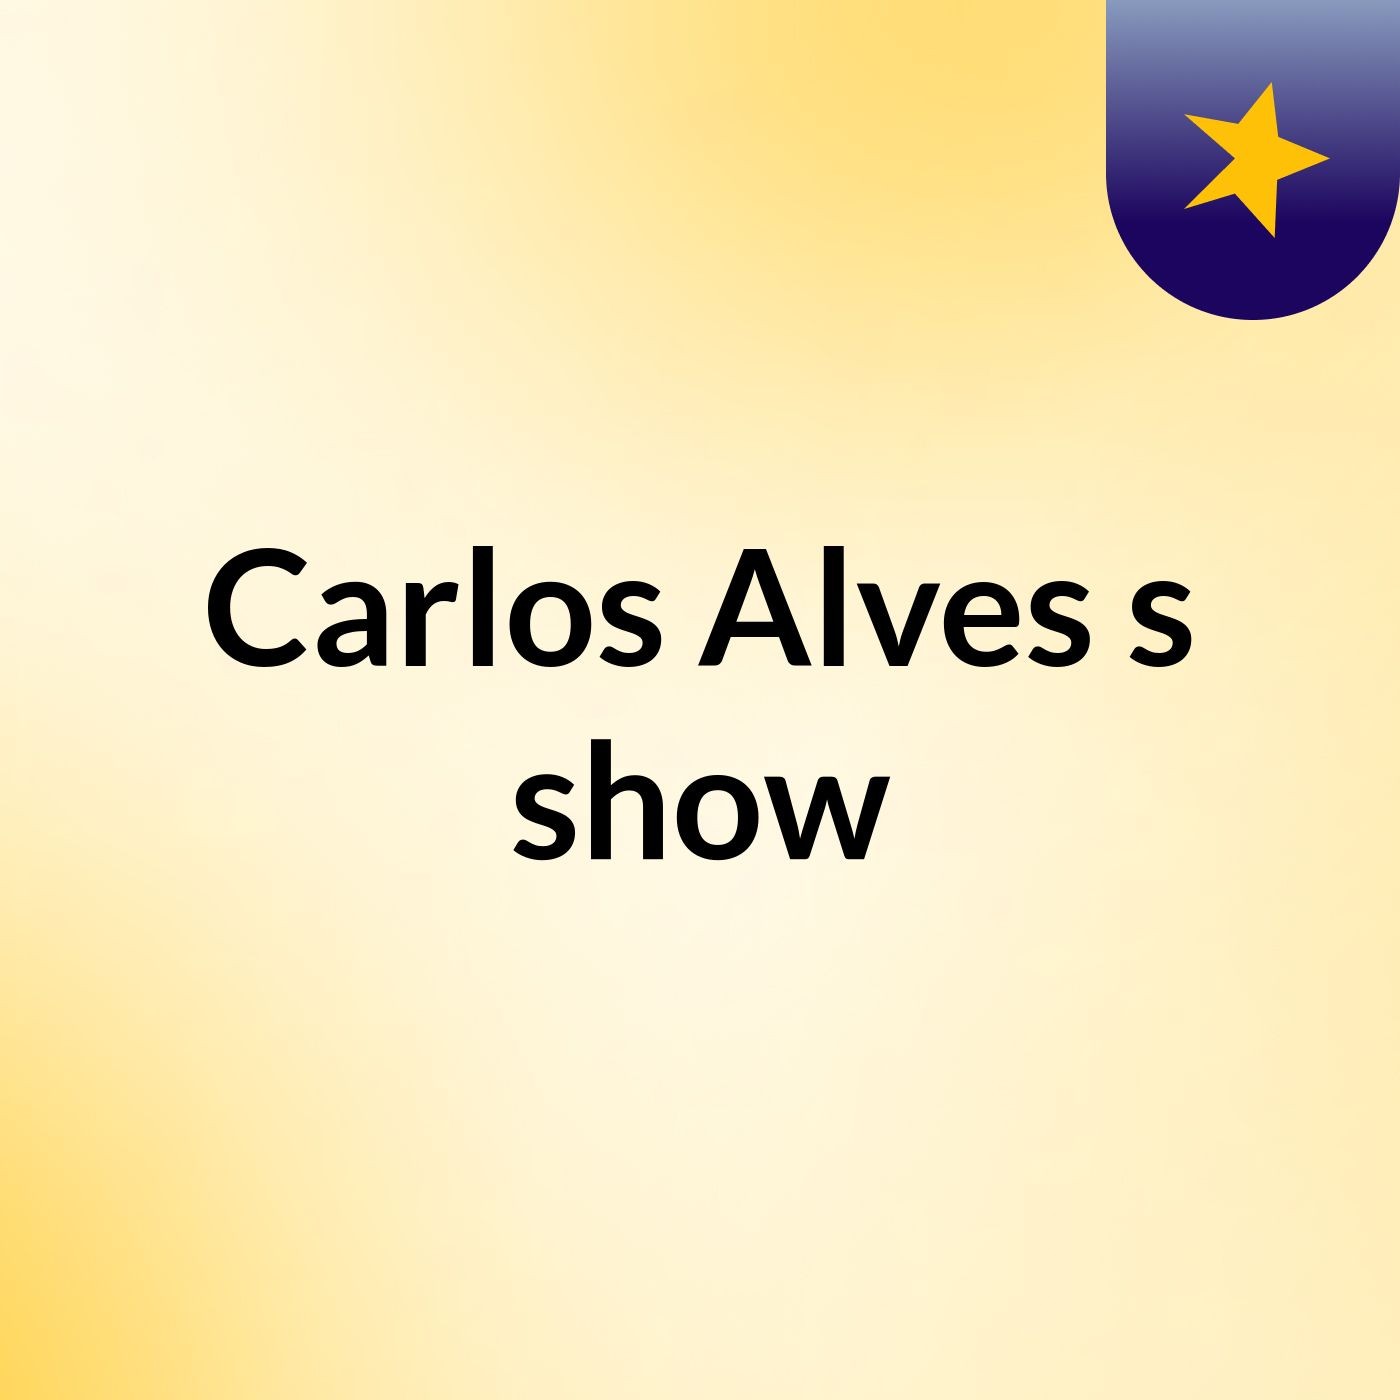 Carlos Alves's show